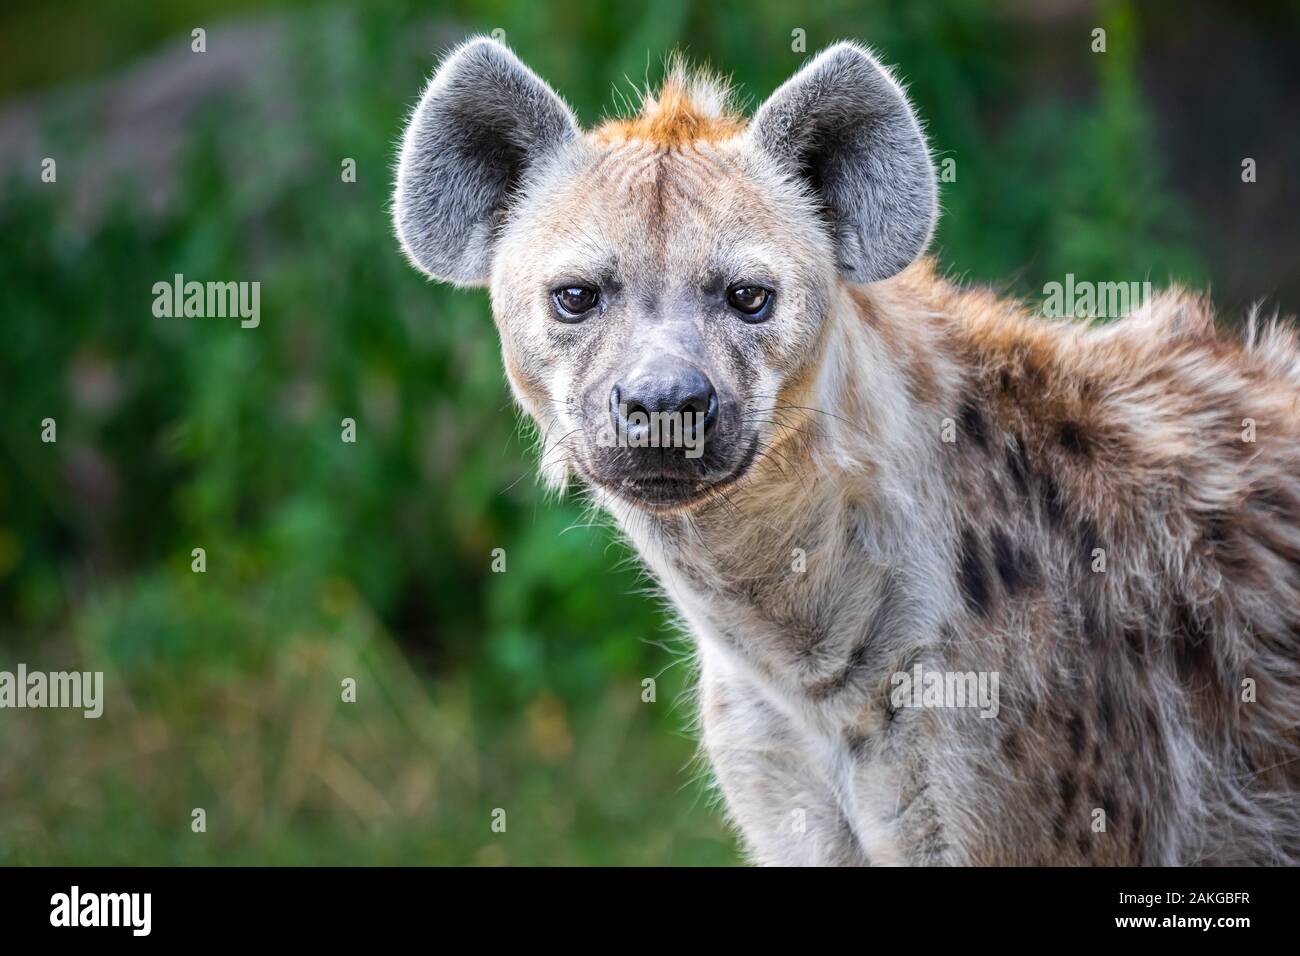 Gros plan sur un hyène sauvage qui se rapproche de l'appareil photo sur fond bokeh vert Banque D'Images